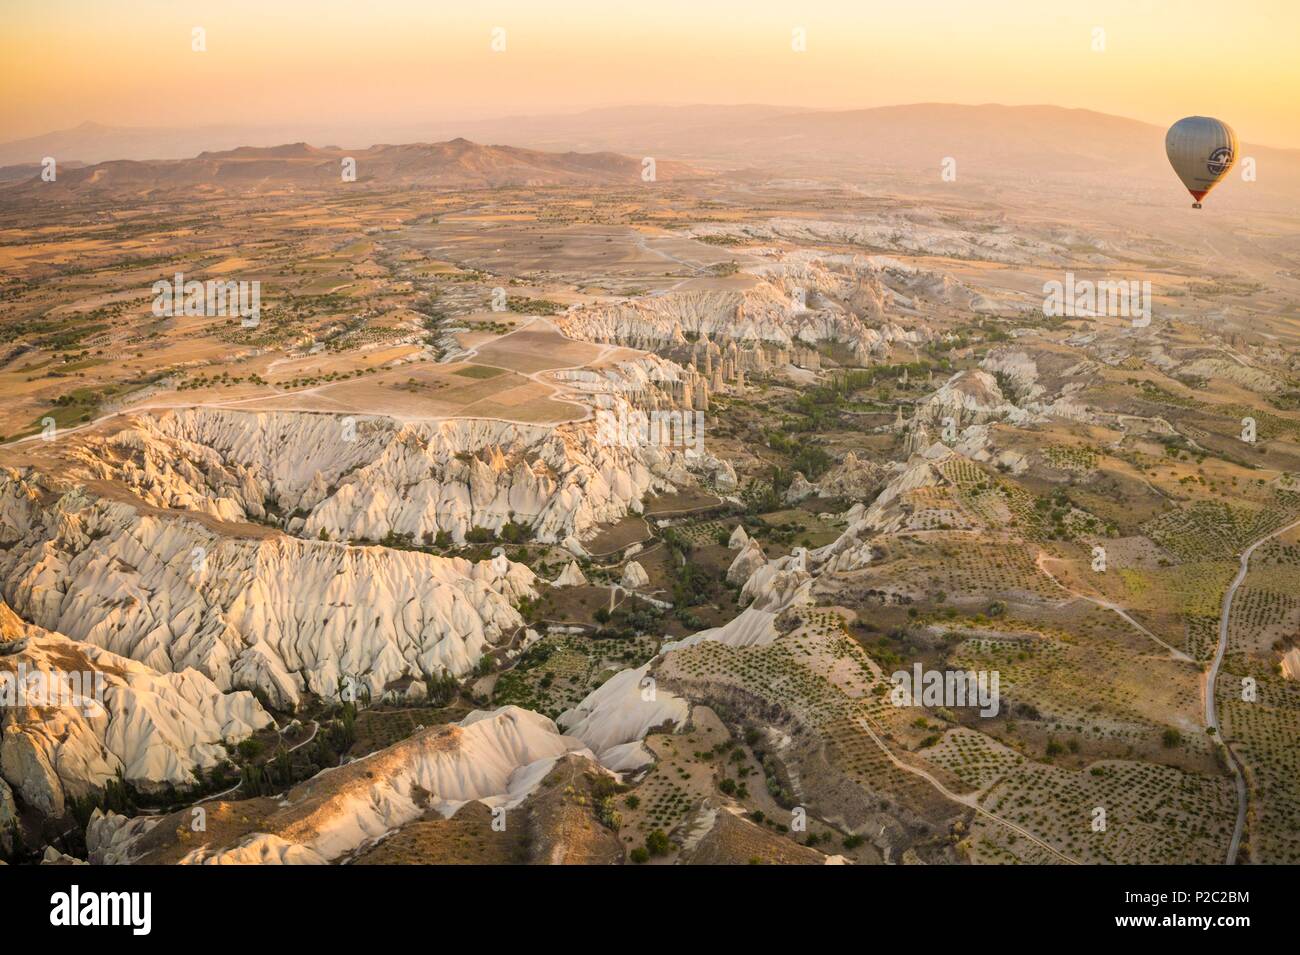 La Turquie, l'Anatolie Centrale, Nev&# x15f;province ehir, Cappadoce, site classé au Patrimoine Mondial de Göreme, l'agriculture dans les collines de tuf volcanique du parc national de Göreme, au lever du soleil (vue aérienne) Banque D'Images